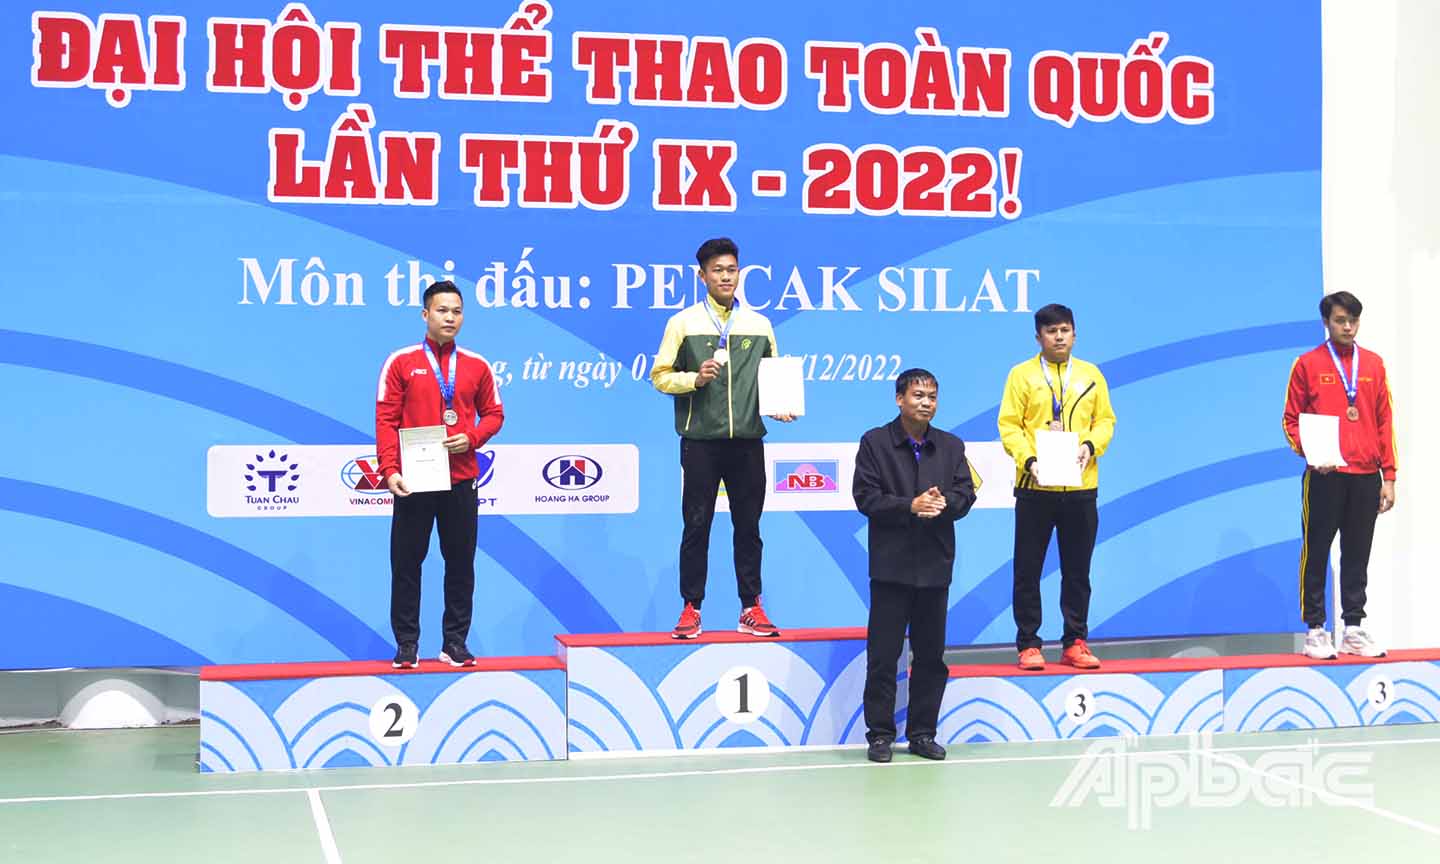 VĐV Phạm Thành Tâm (áo vàng) đoạt HCĐ ở hạng cân 80 kg.